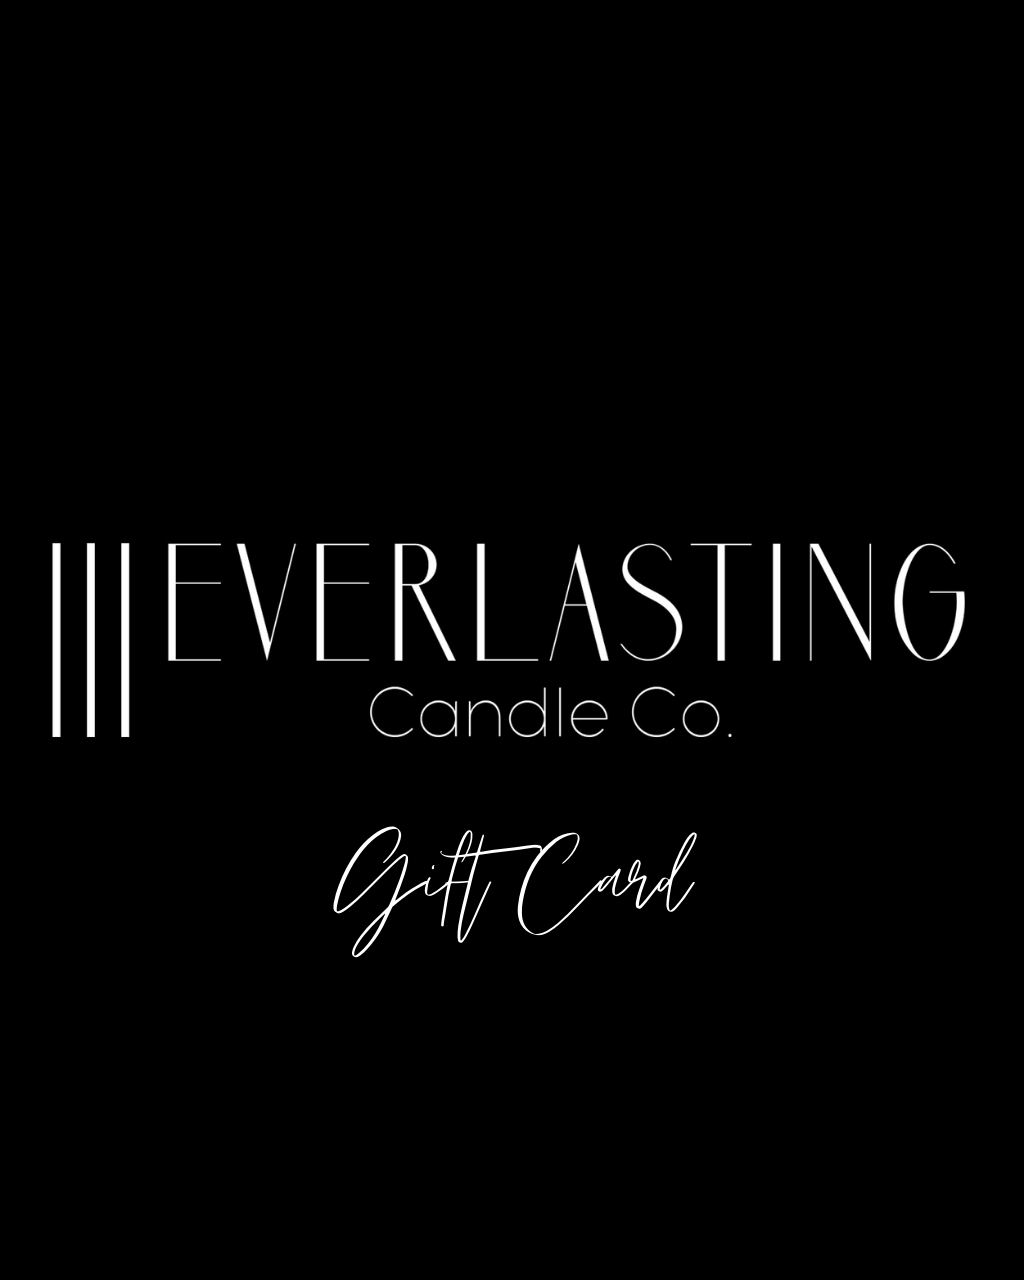 Everlasting Candle Co. USA E-Gift Card